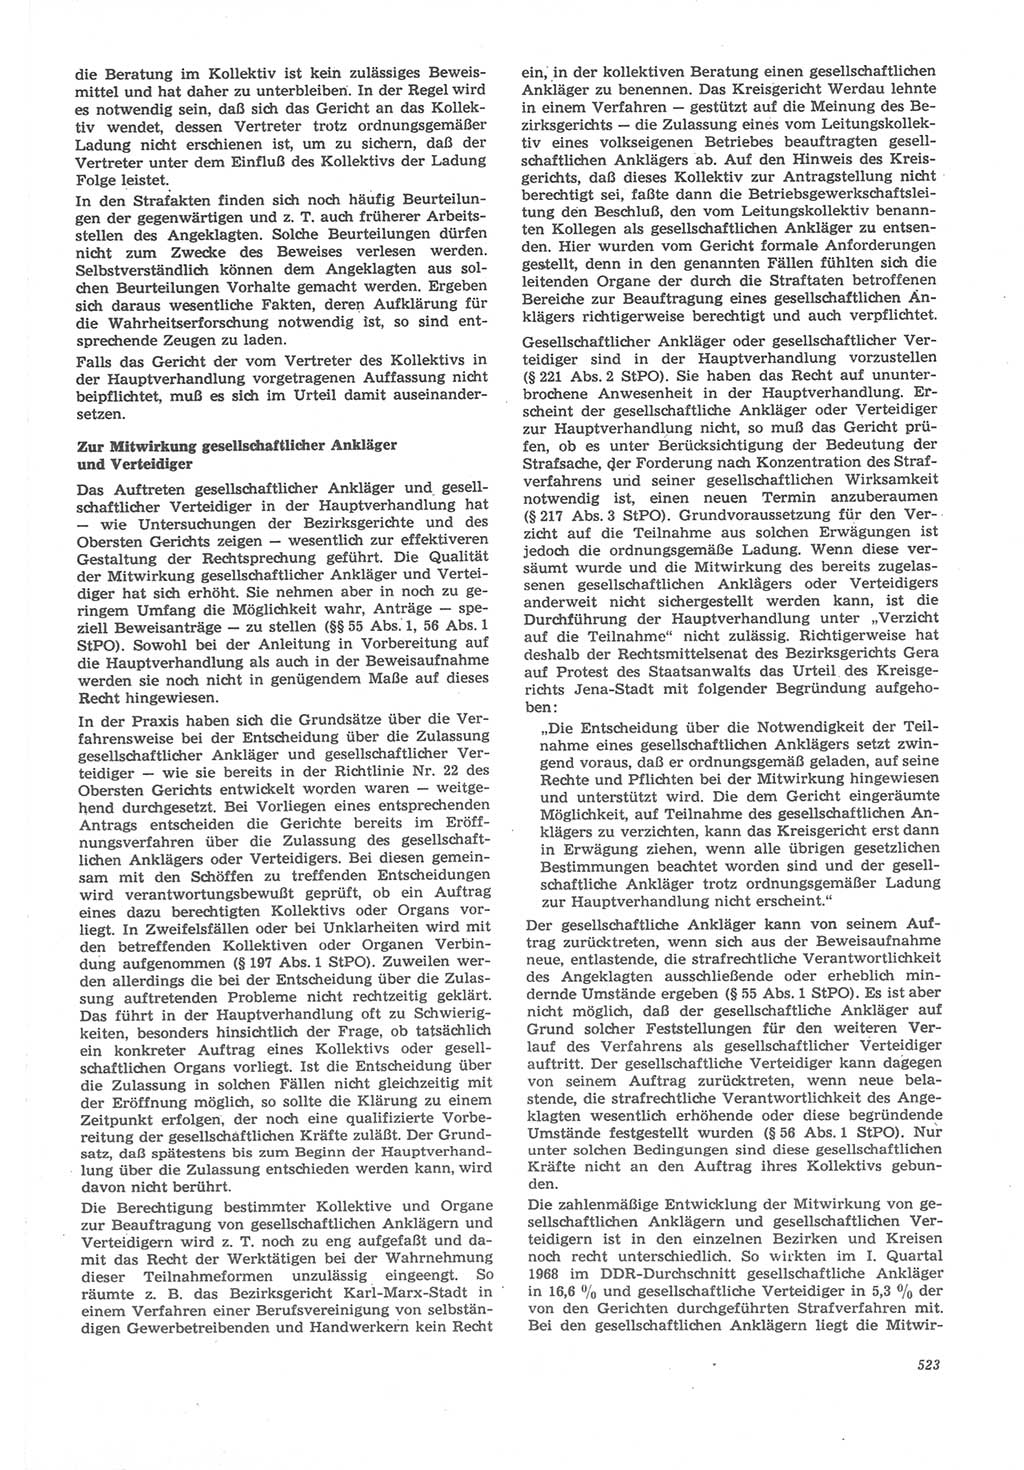 Neue Justiz (NJ), Zeitschrift für Recht und Rechtswissenschaft [Deutsche Demokratische Republik (DDR)], 22. Jahrgang 1968, Seite 523 (NJ DDR 1968, S. 523)